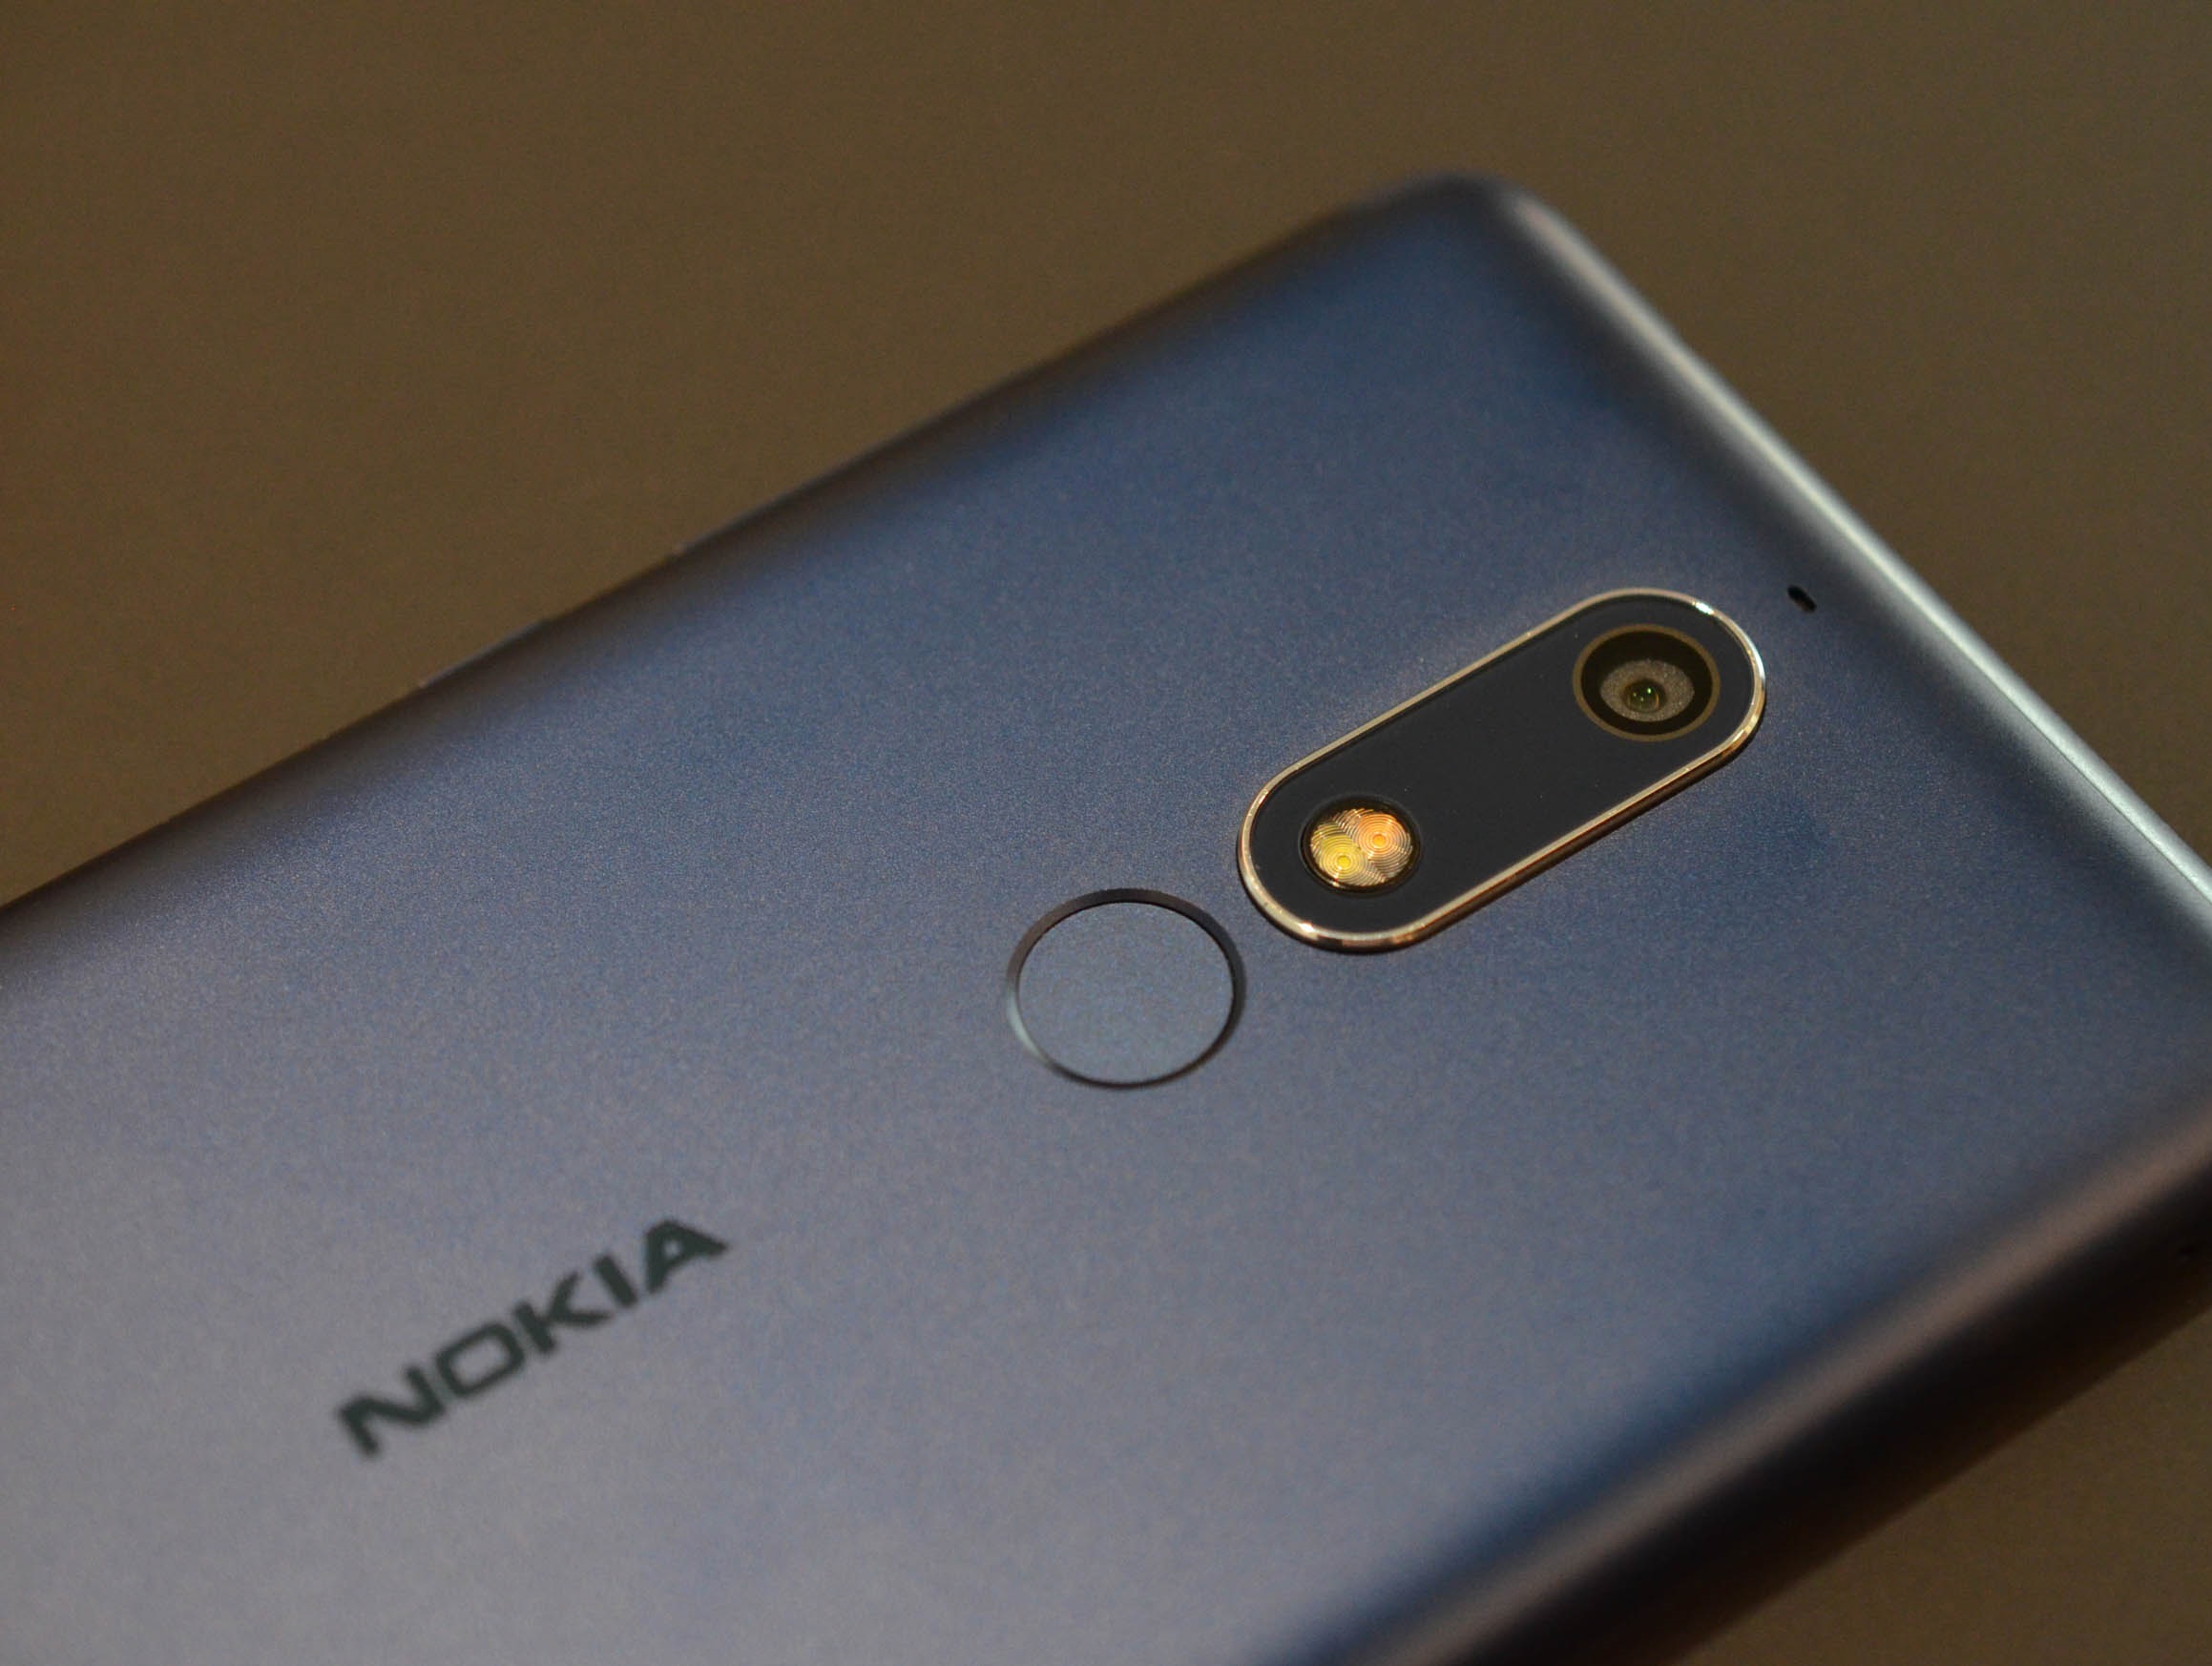 مزايا وعيوب هاتف Nokia الجديد Nokia 5.1 أحد أفضل هواتف الفئة المتوسطة